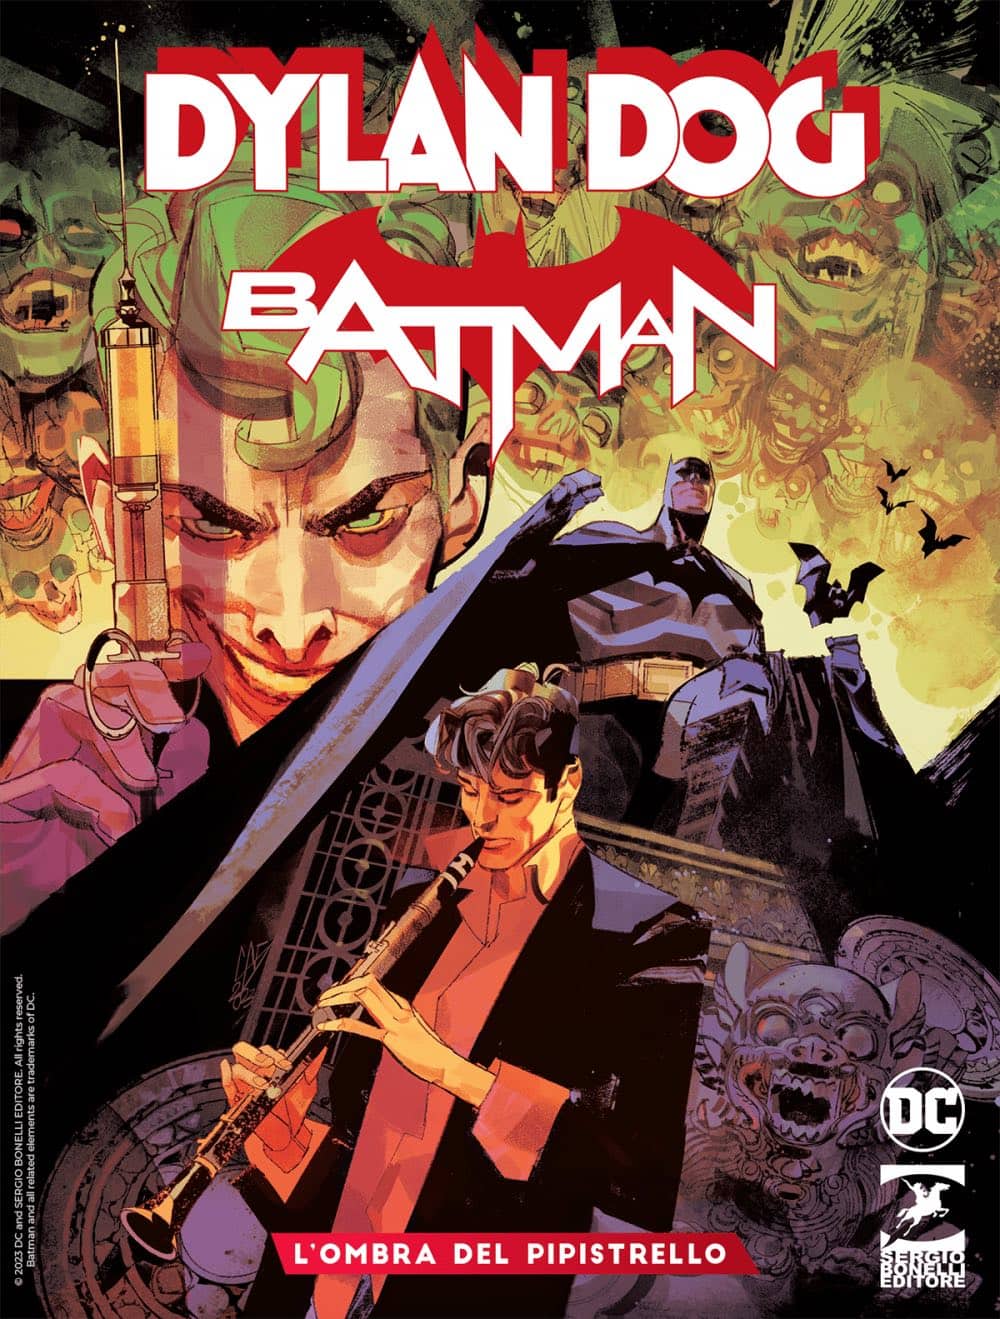 Dylan Dog/Batman, tavole e trailer del crossover a fumetti BonelliDC